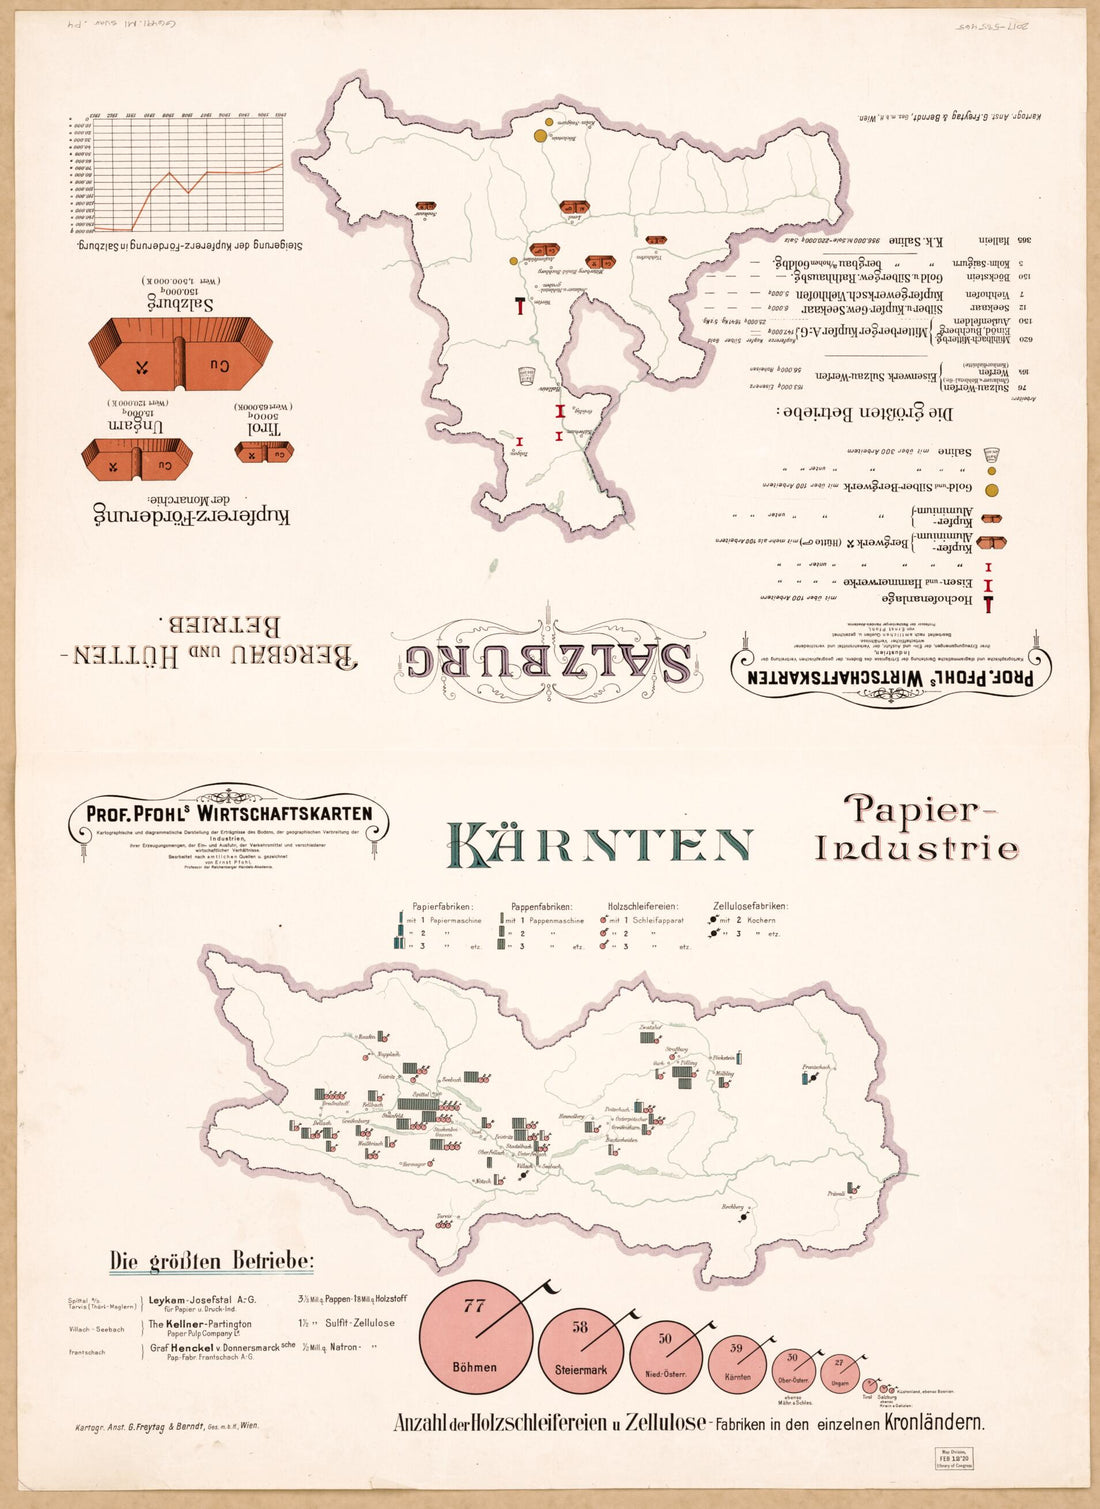 This old map of Und Ausfuhr, Der Verkehrsmittel Und Verschiedener Wirtschaftlicher Verhältnisse from 1913 was created by Ernst Pfohl in 1913